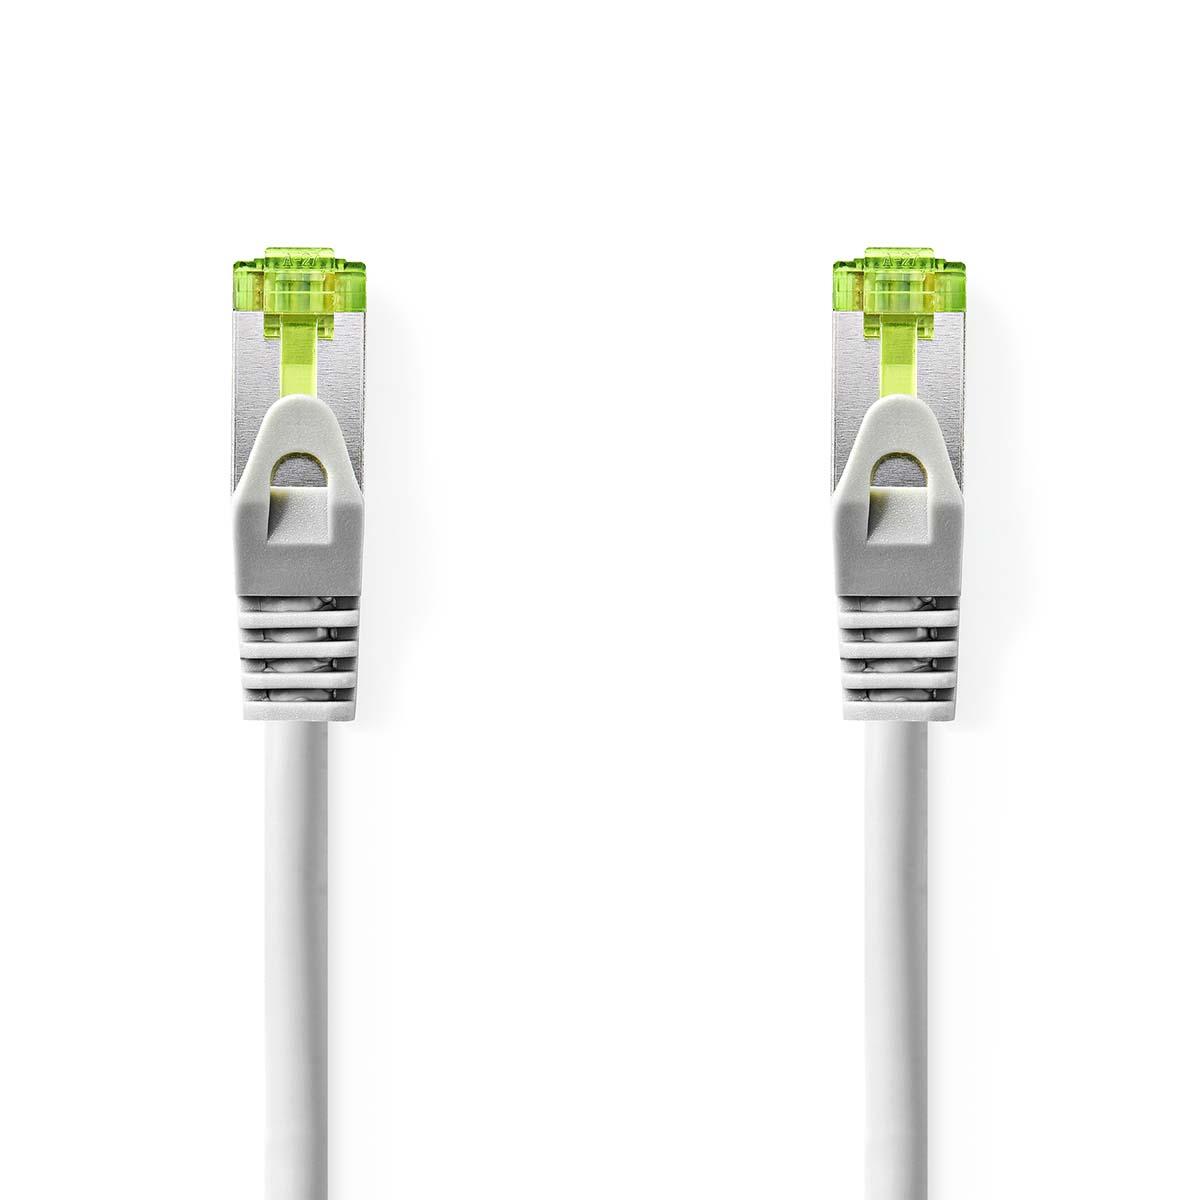 Cable ethernet rj45(8p8c) cat7 (10000 mbit/s) gris 3.0m